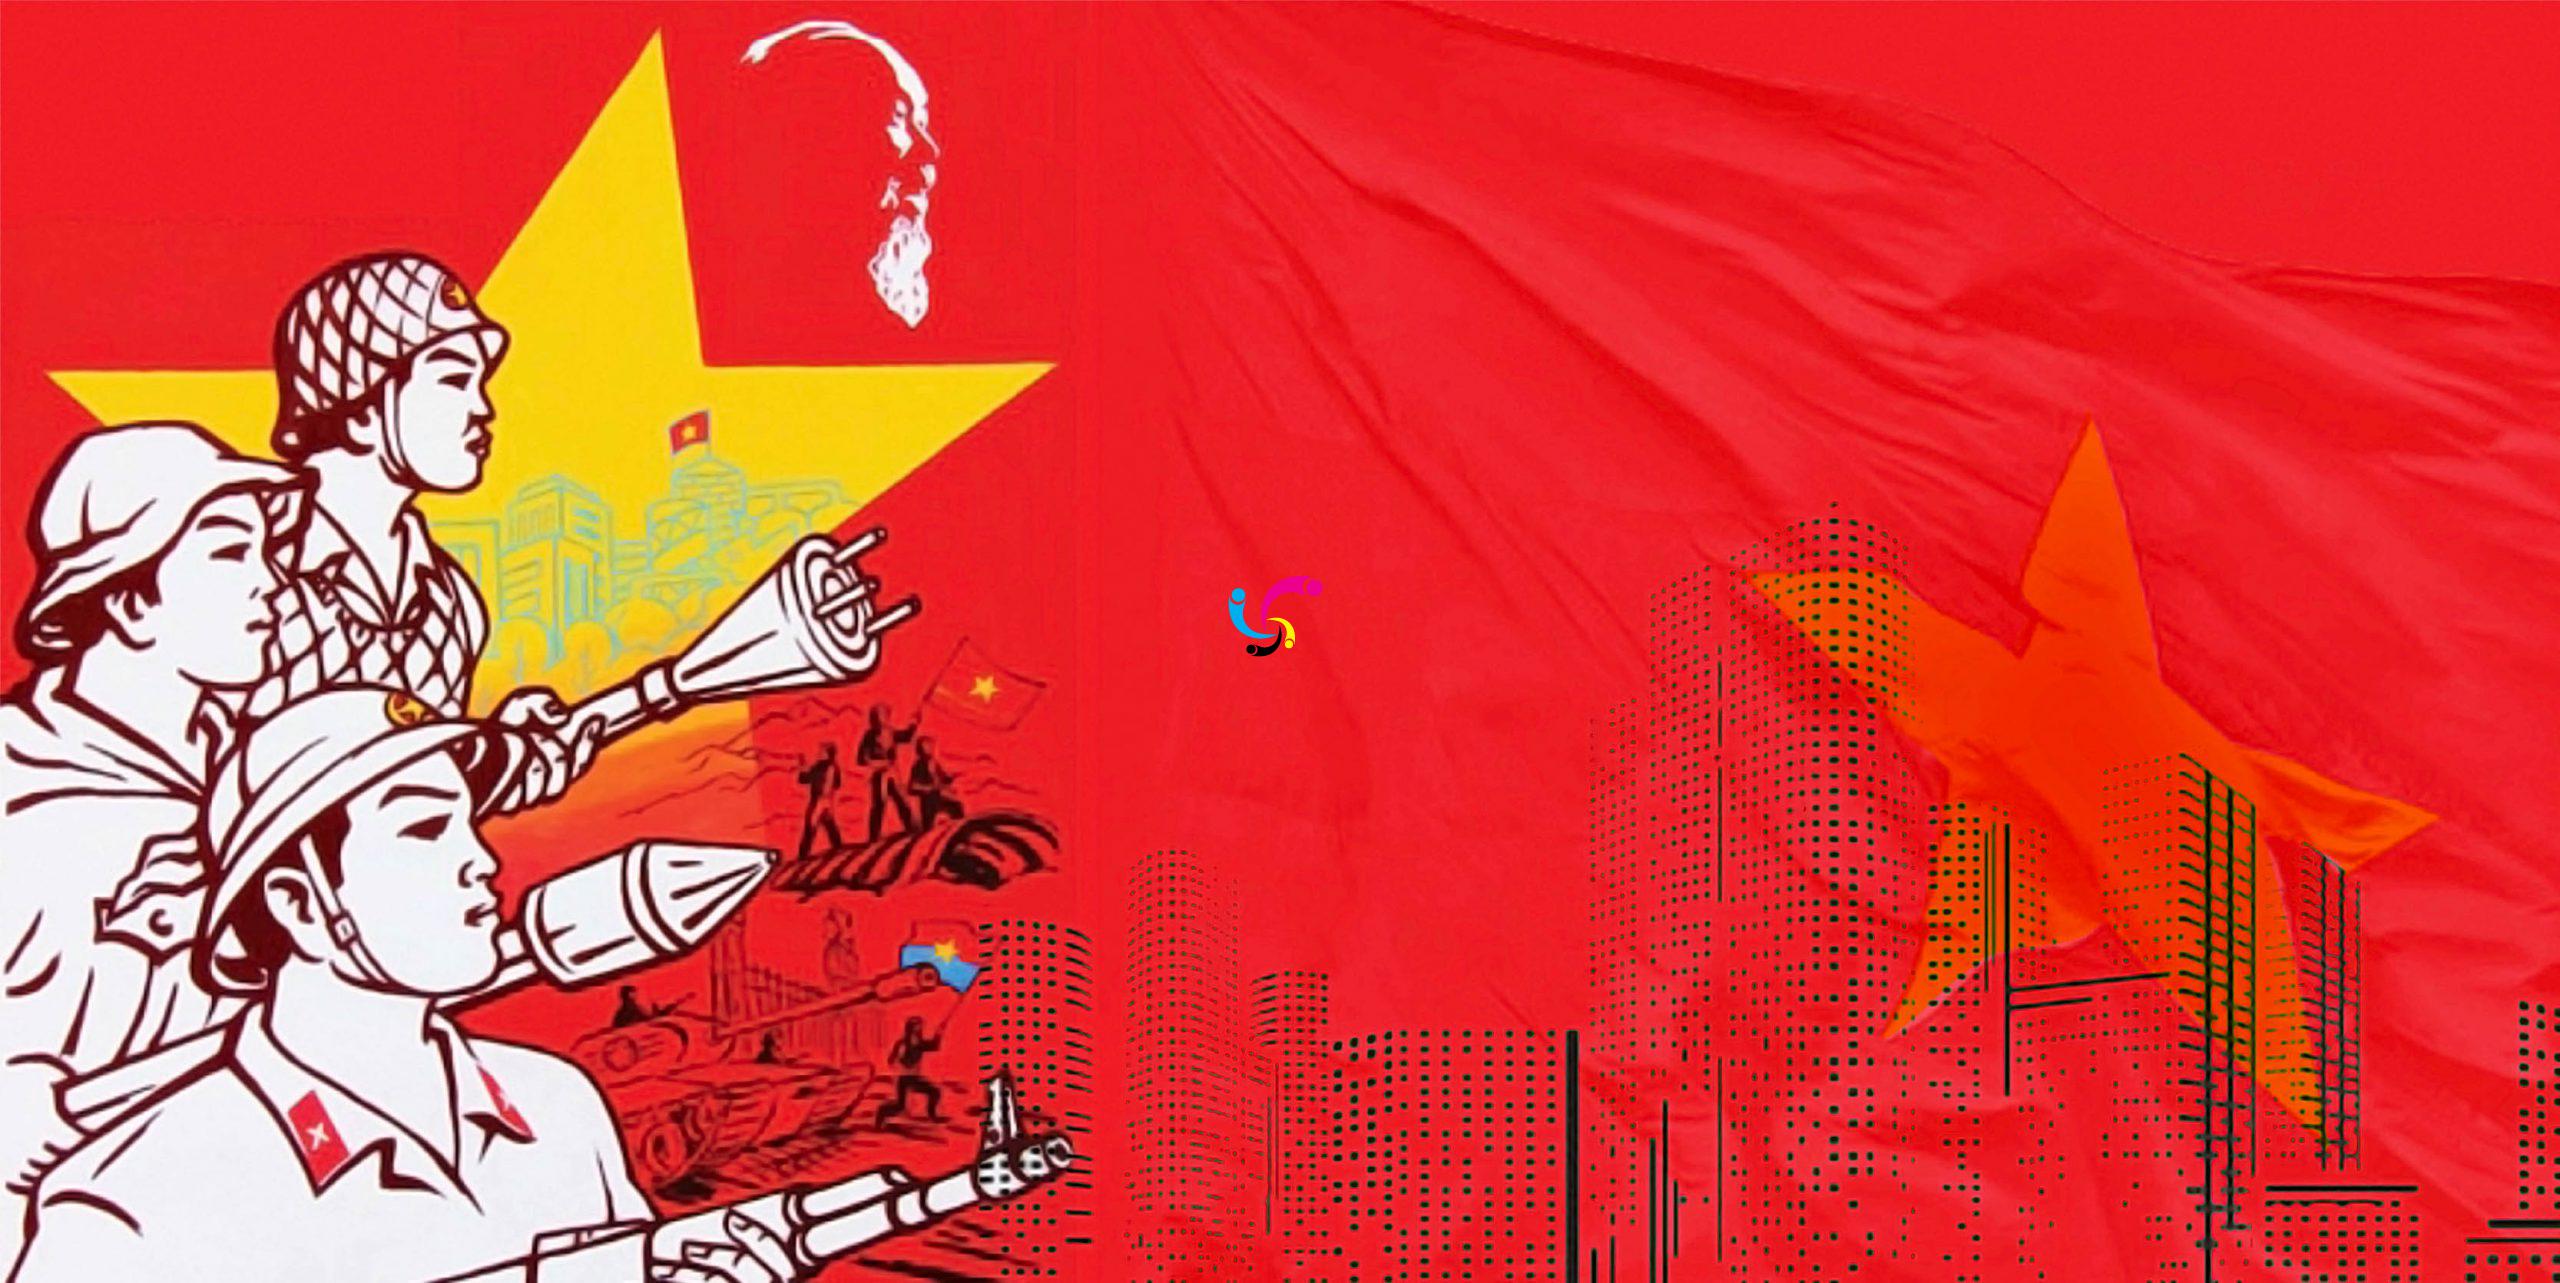 Tự hào lá cờ đỏ sao vàng Việt Nam: Lá cờ đỏ sao vàng của Việt Nam được xem là biểu tượng của sự độc lập và sự tự do. Nó được quen thuộc với những hình ảnh đẹp của tuyệt phẩm thiên nhiên, những kiến trúc cổ kính hay những trận đấu của tuyển bóng đá quốc gia. Lá cờ này còn thể hiện lòng yêu nước và tình cảm quê hương của người dân Việt Nam. Hãy xem hình ảnh liên quan để choáng ngợp trước sự ấn tượng của lá cờ đỏ sao vàng.